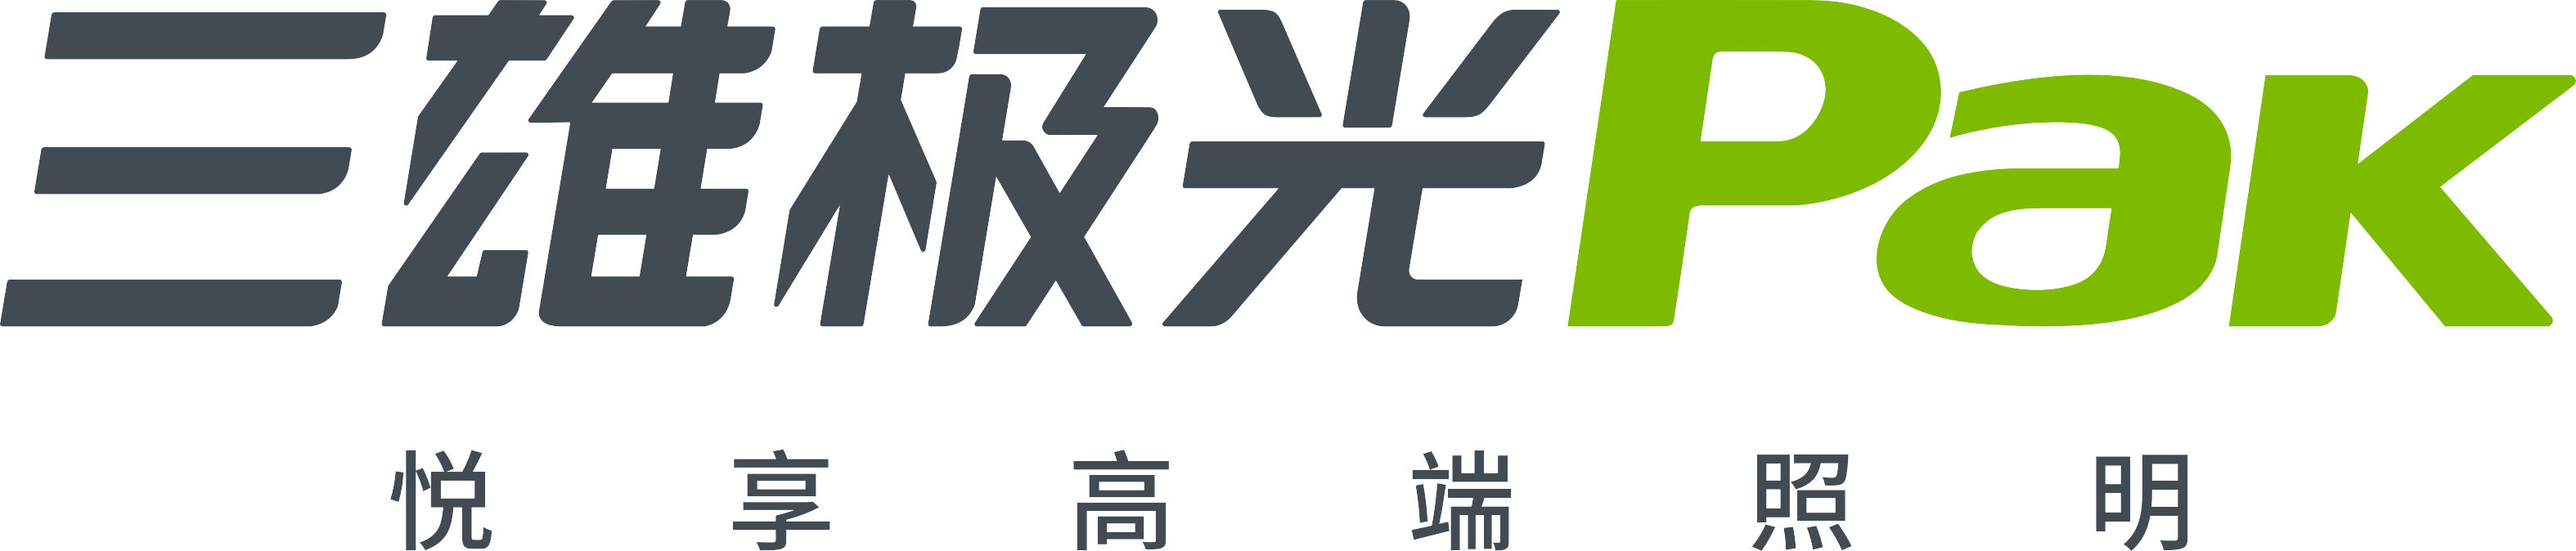 三雄极光 Pak logo